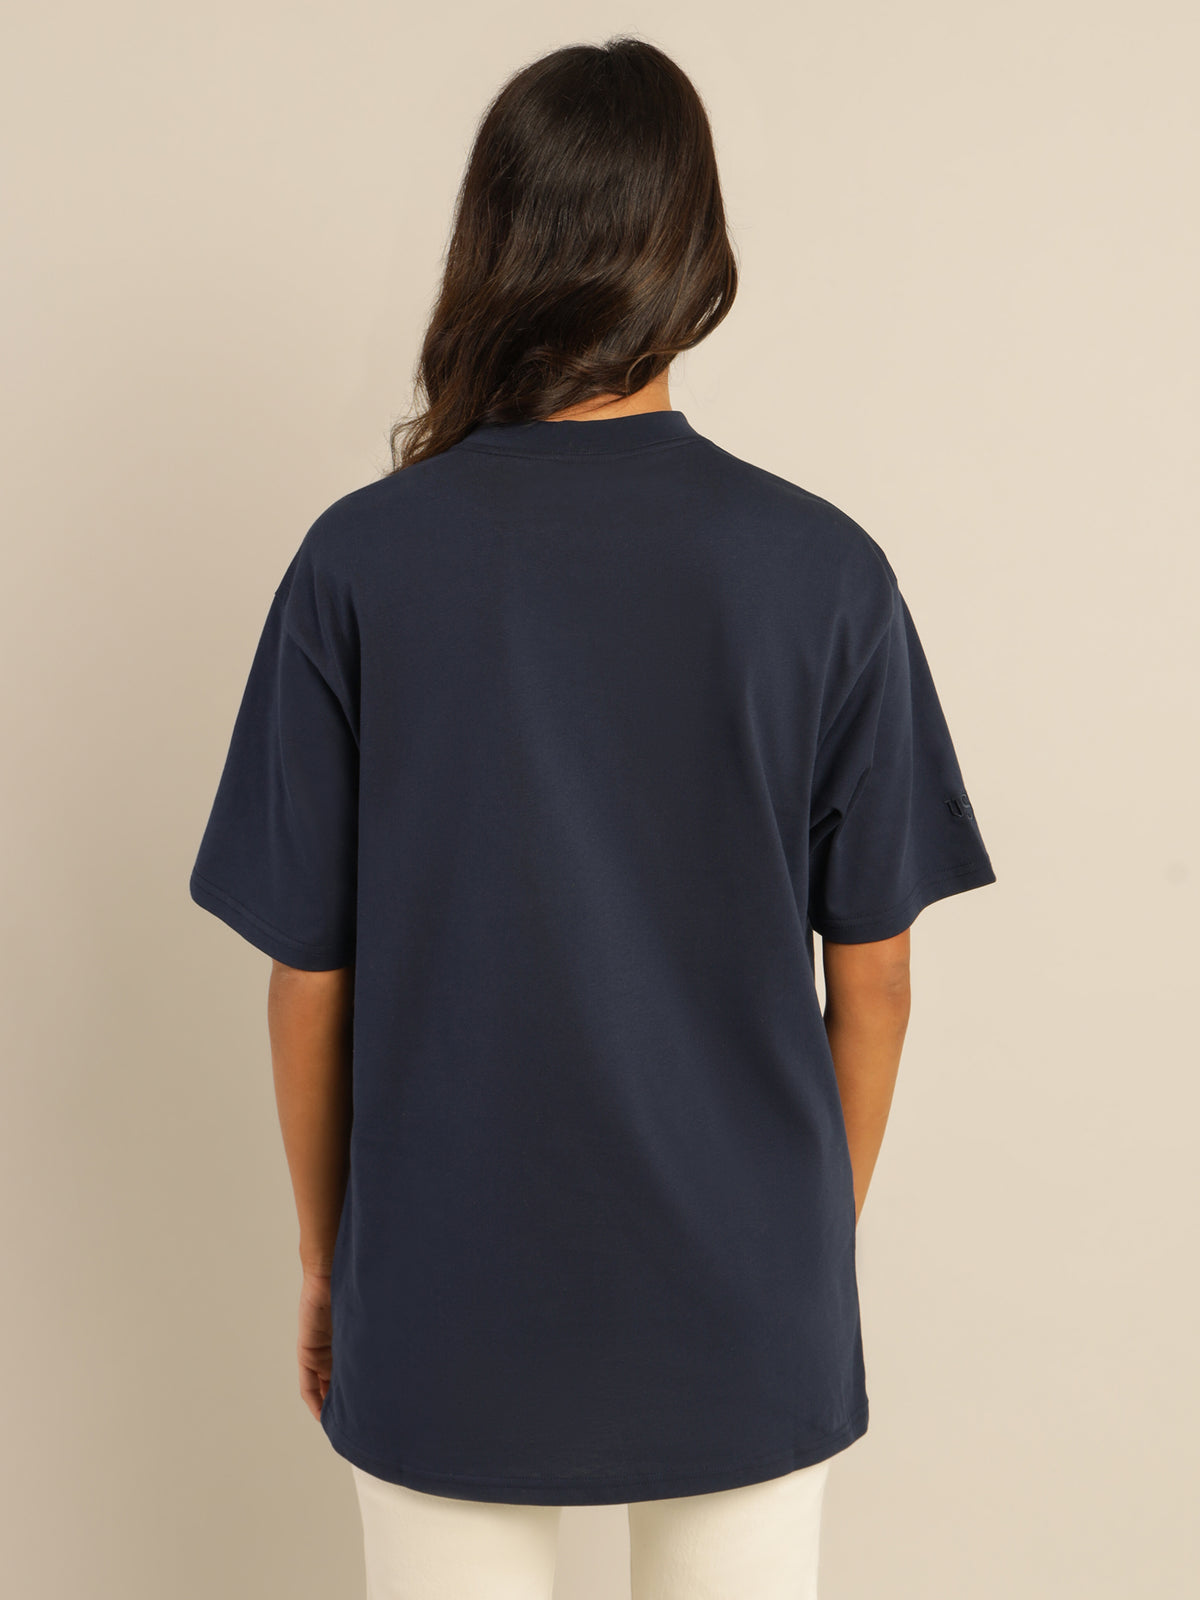 UC Berkeley Emblem T-Shirt in Navy Blue